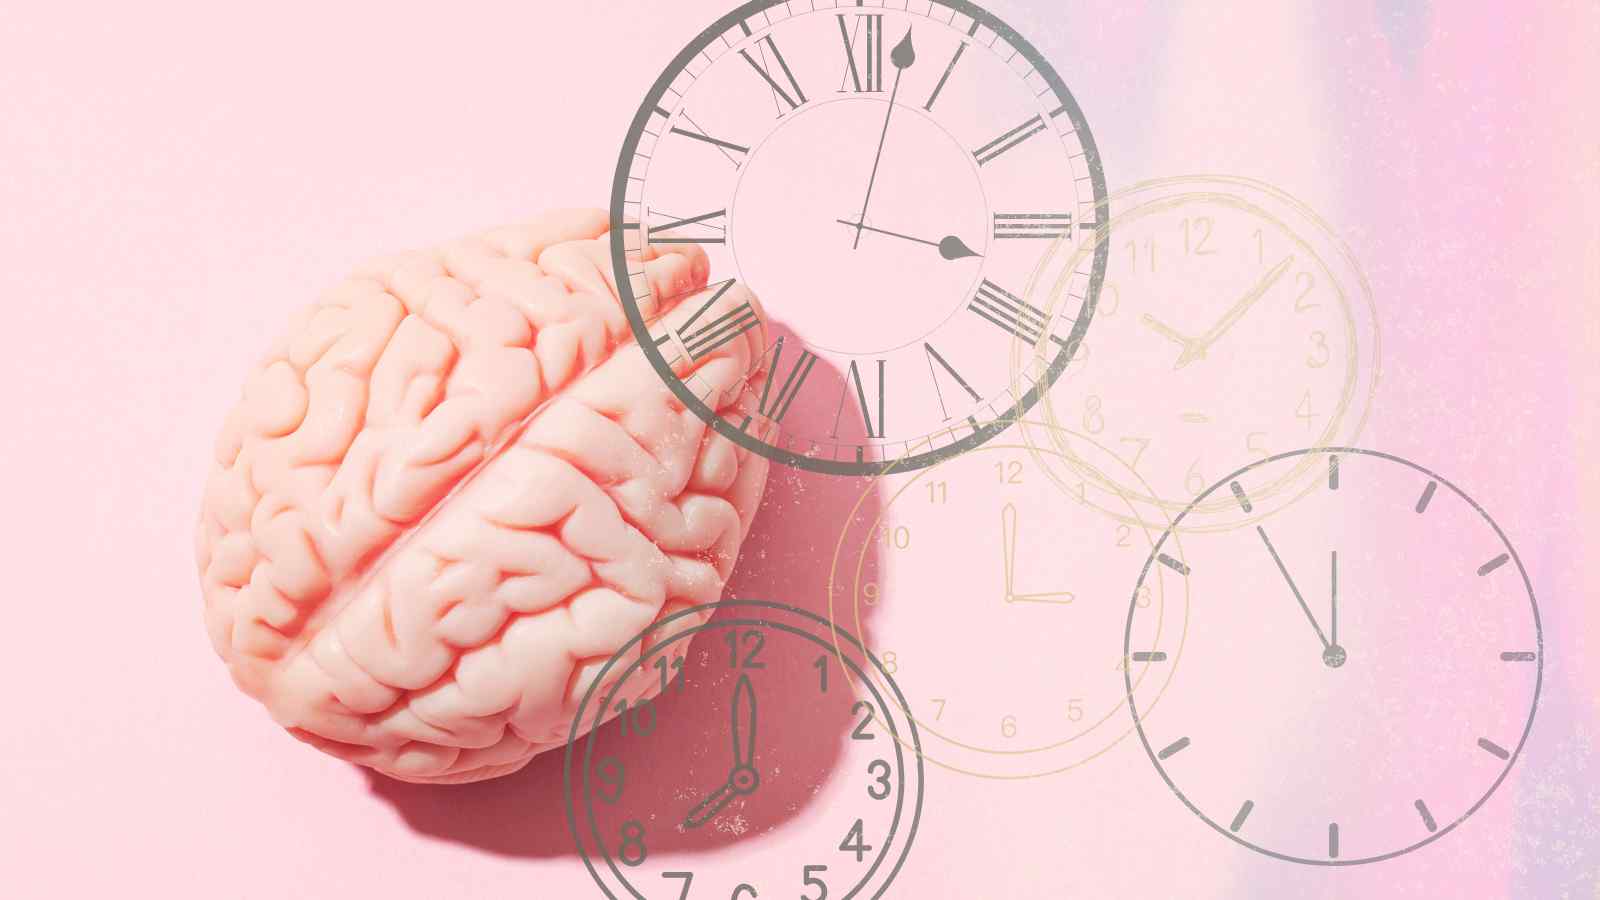 Secondo recenti studi quella dell'orologio interno al cervello umano è solo una falsa credenza